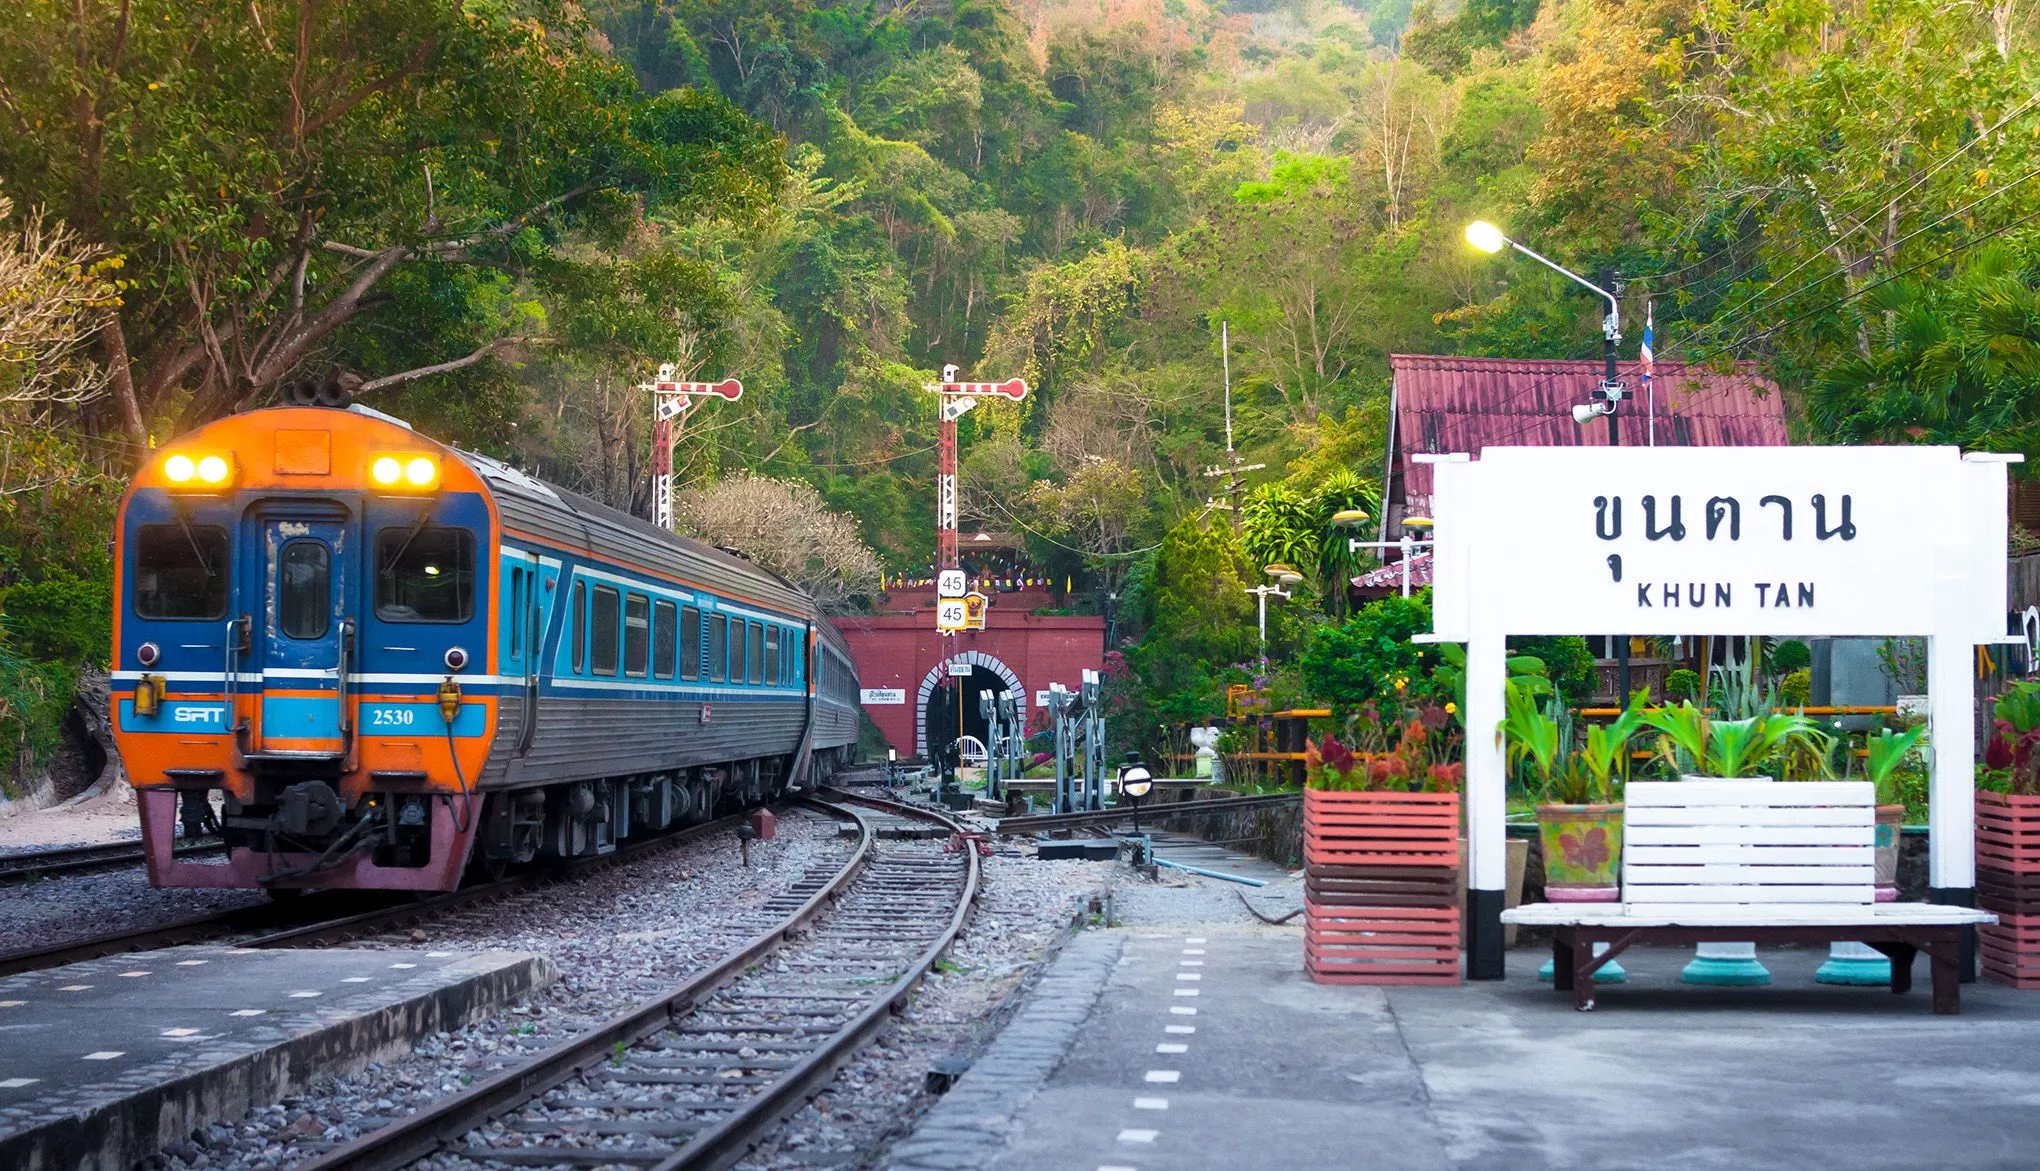 Auch die entlegeneren Landesteile erreicht man bequem mit dem Zug, etwa mit der thailändischen Nordbahn nach Chiang Mai